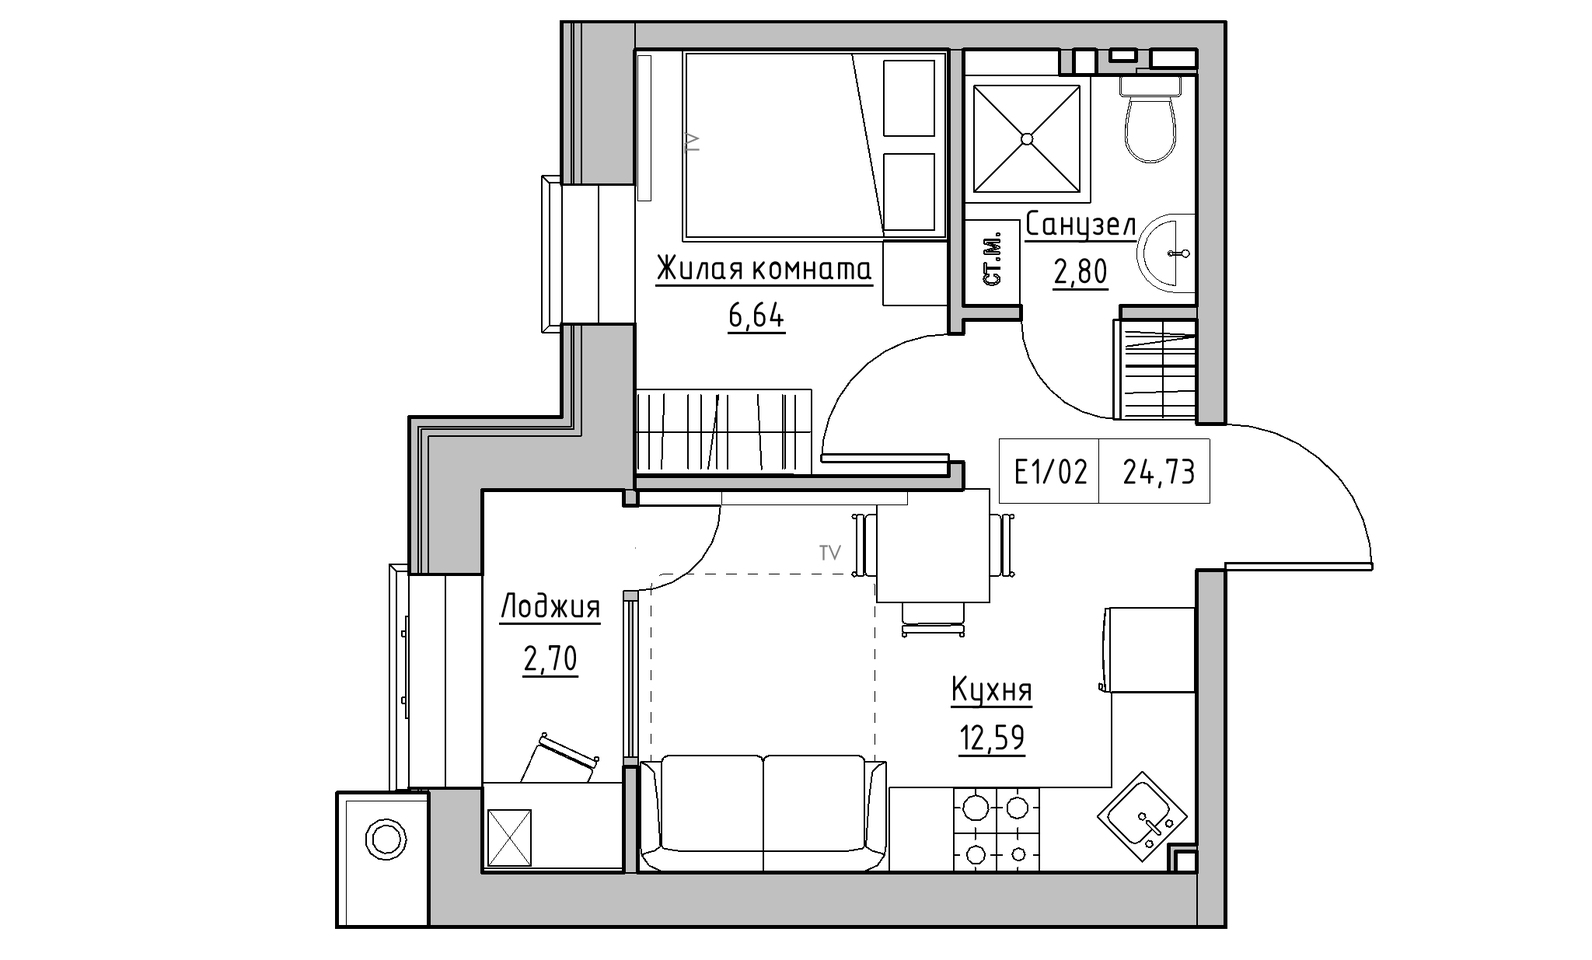 Планировка 1-к квартира площей 24.73м2, KS-014-05/0016.